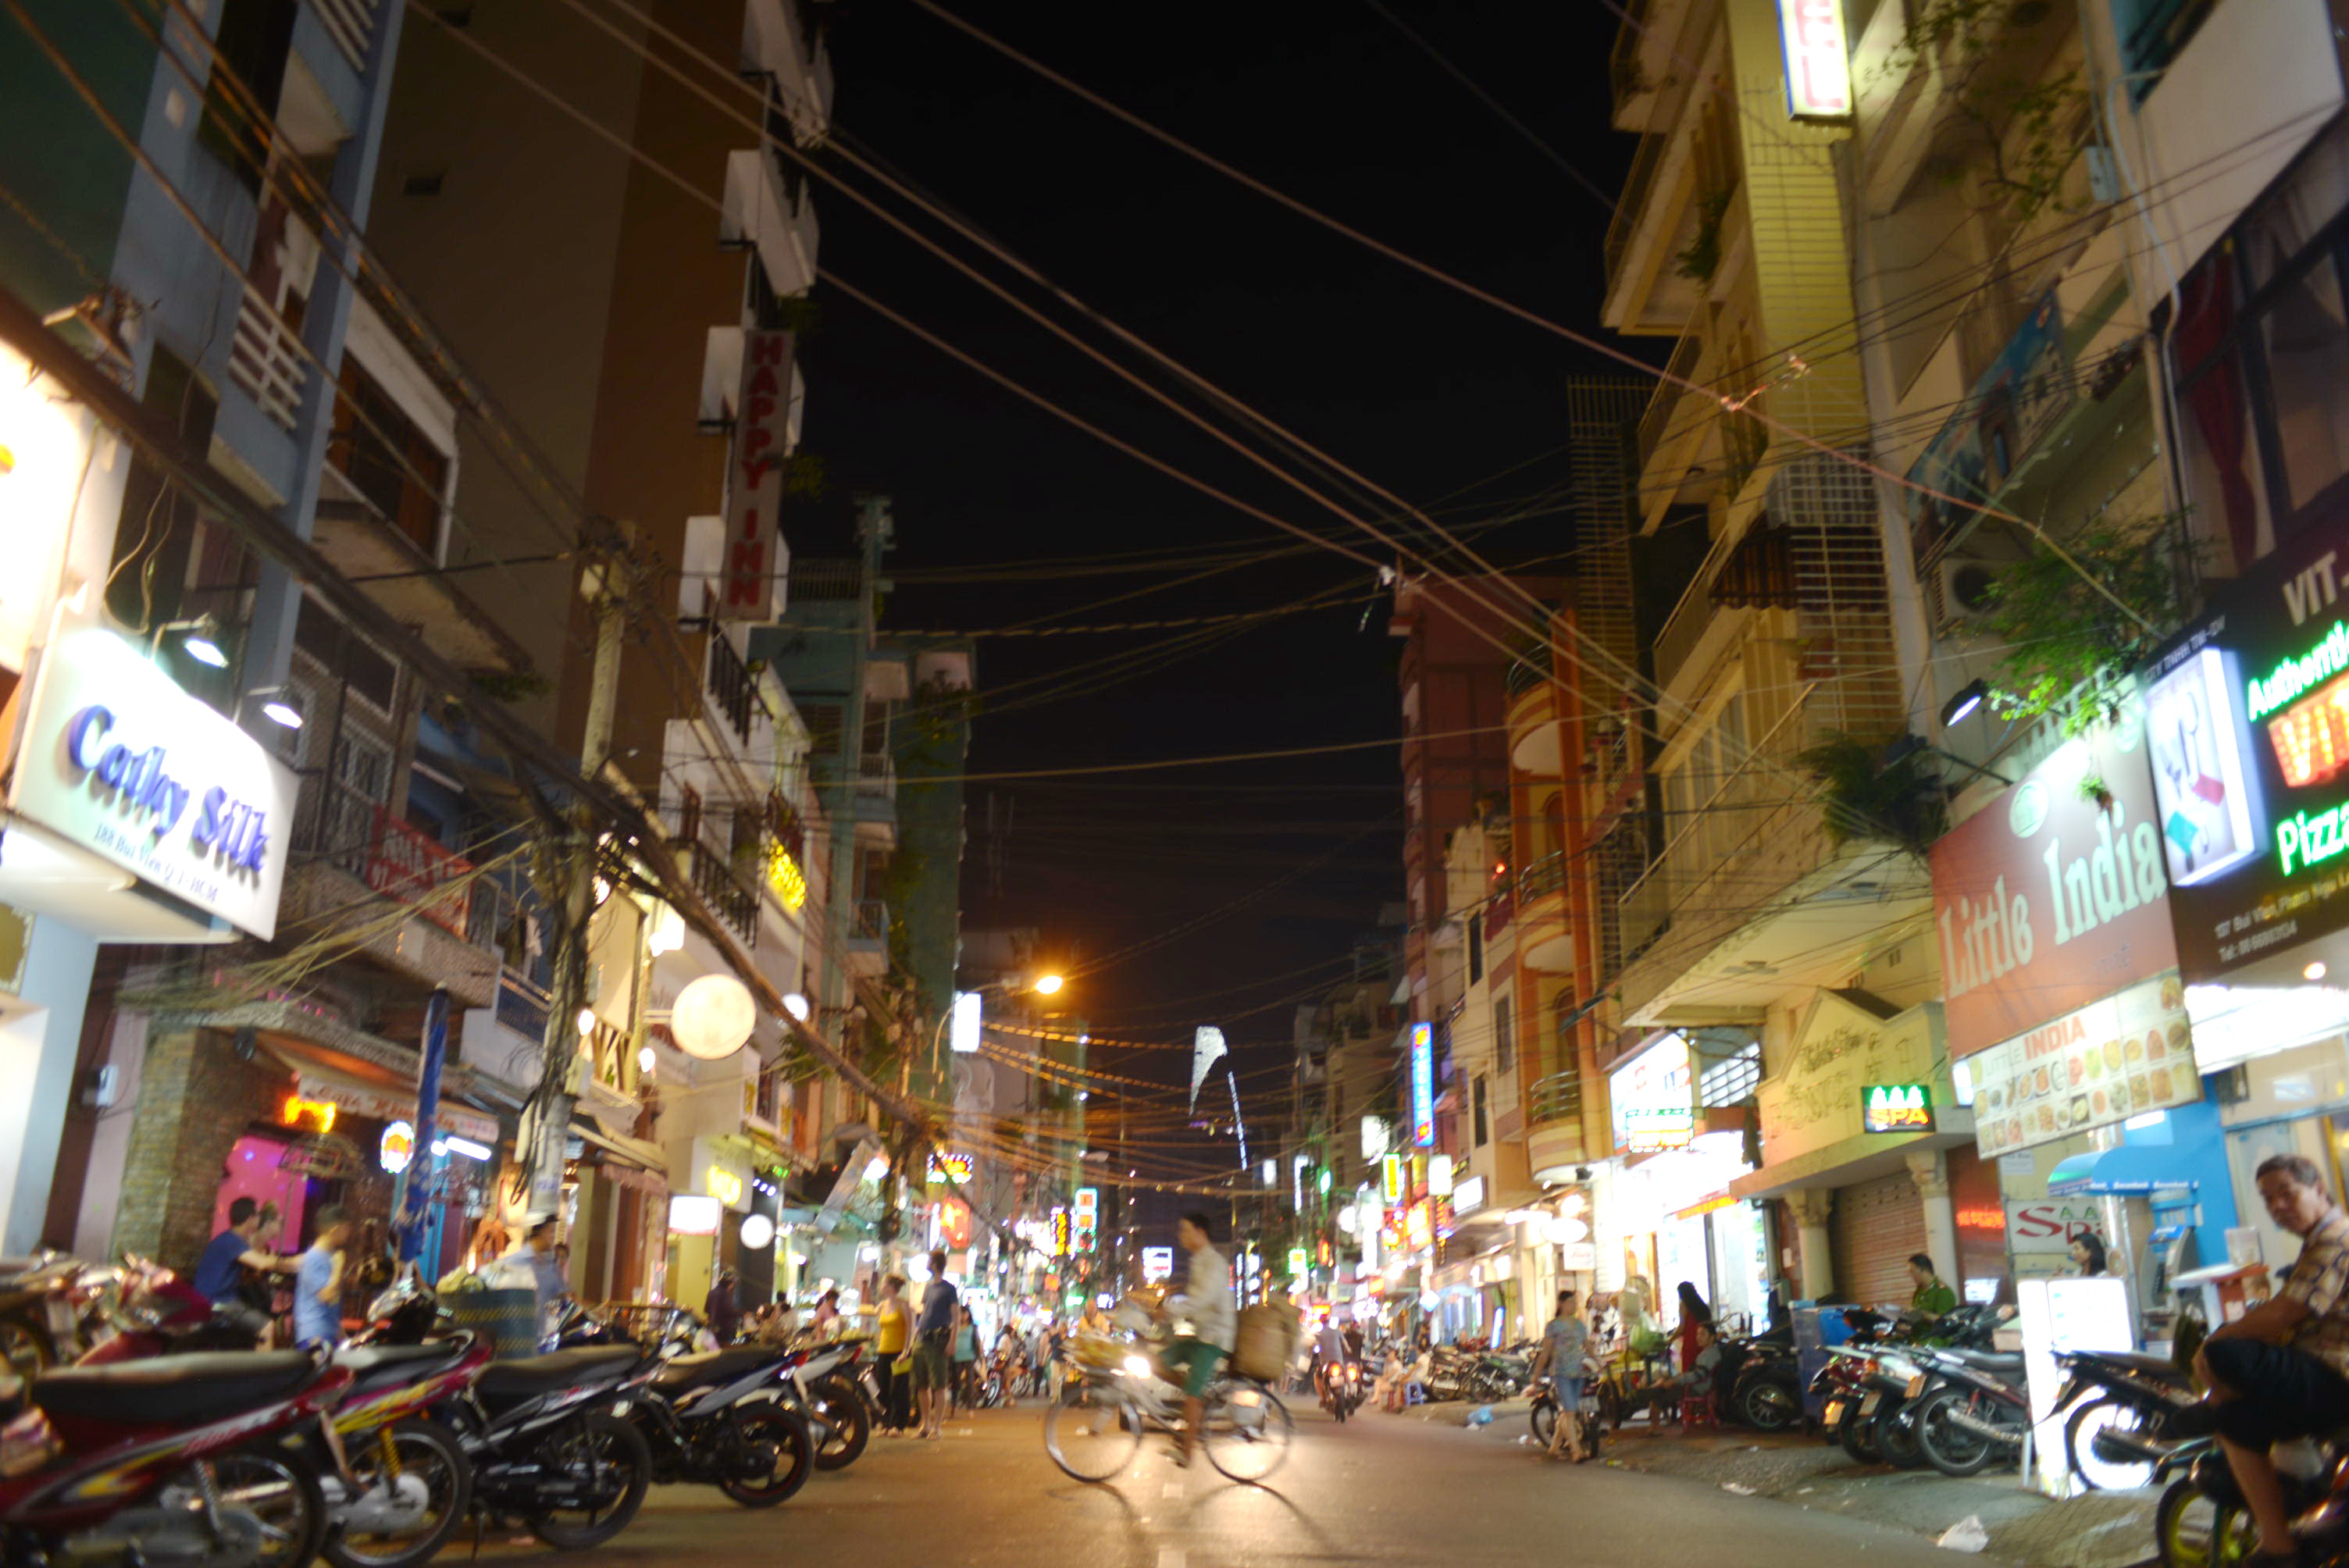 End of an era down Bui Vien Street